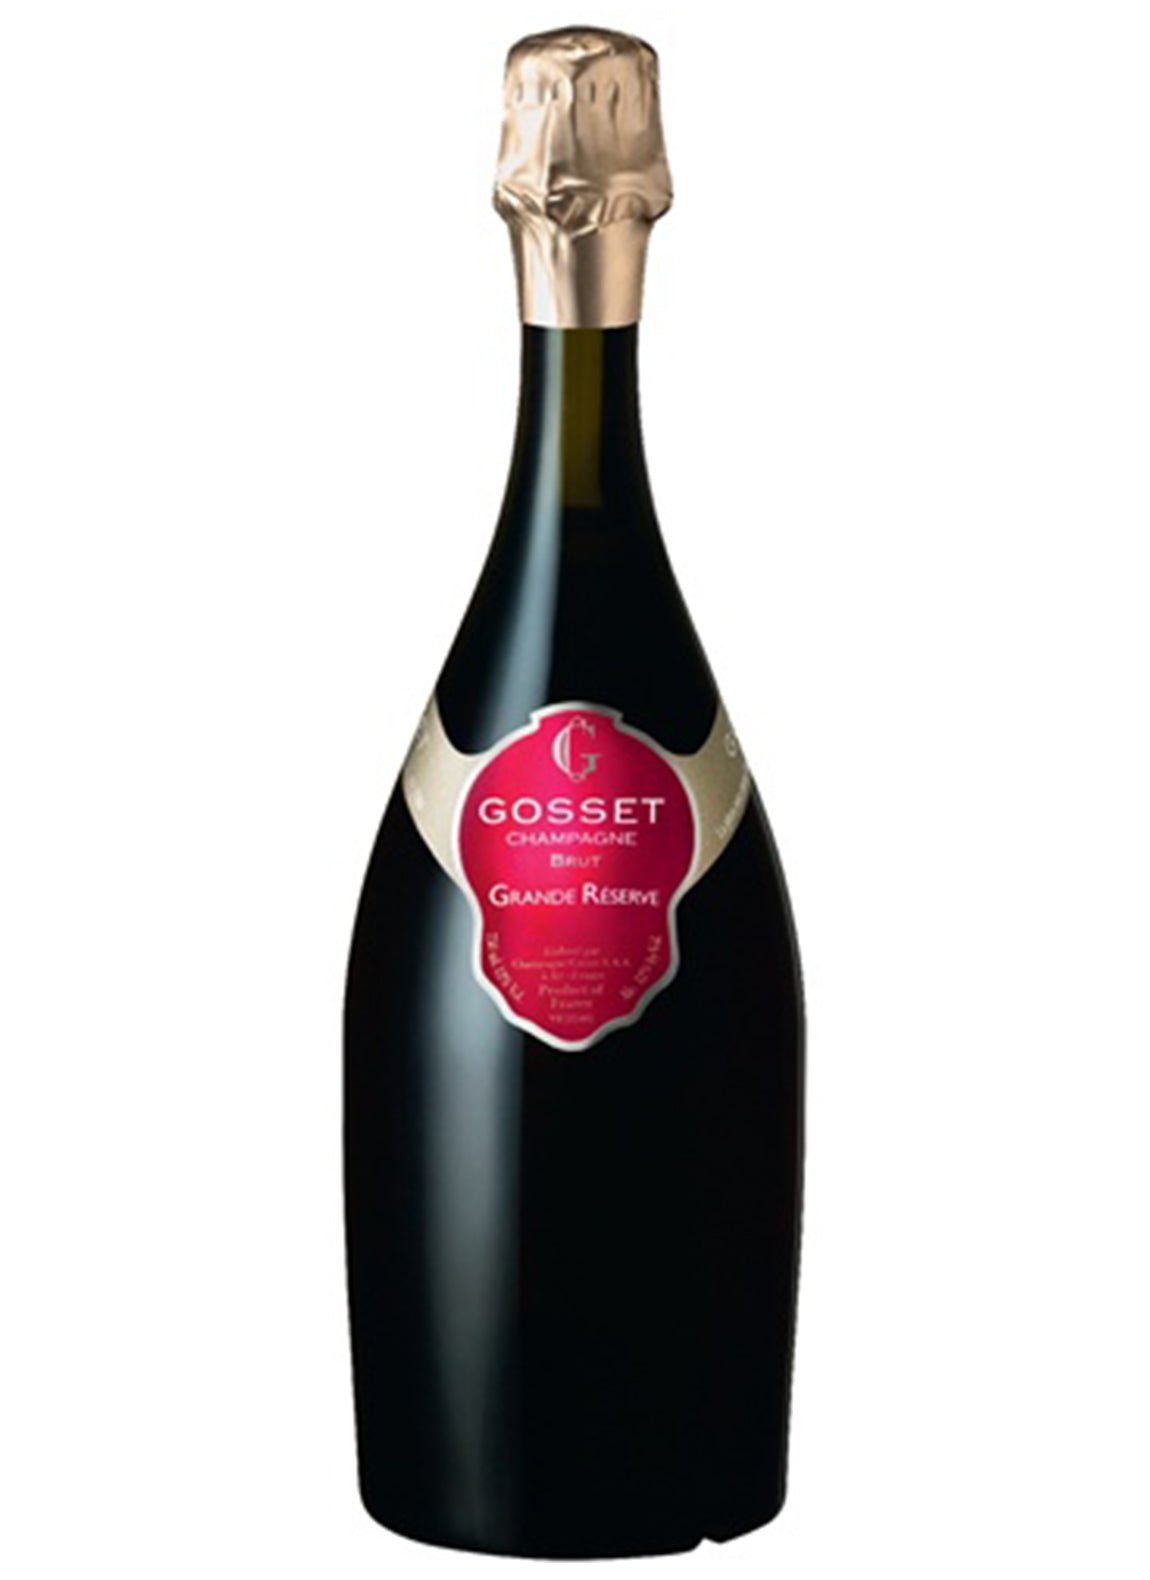 nv Gosset Grande Res 375 - Wine France Champagne - Liquor Wine Cave